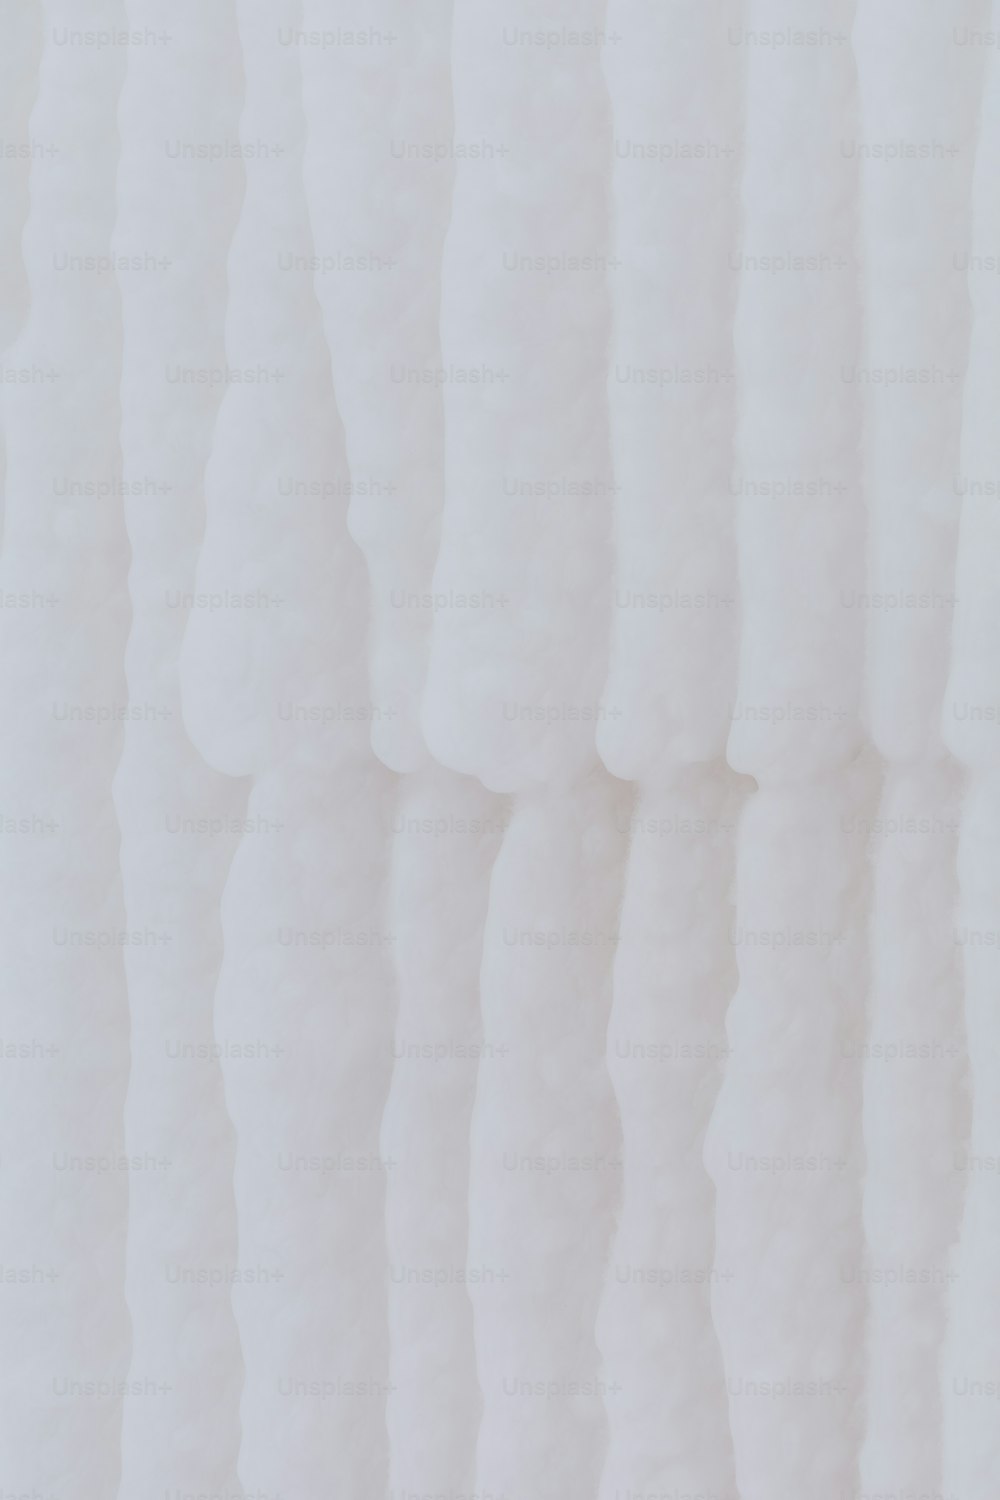 Gros plan d’un mur blanc aux lignes ondulées